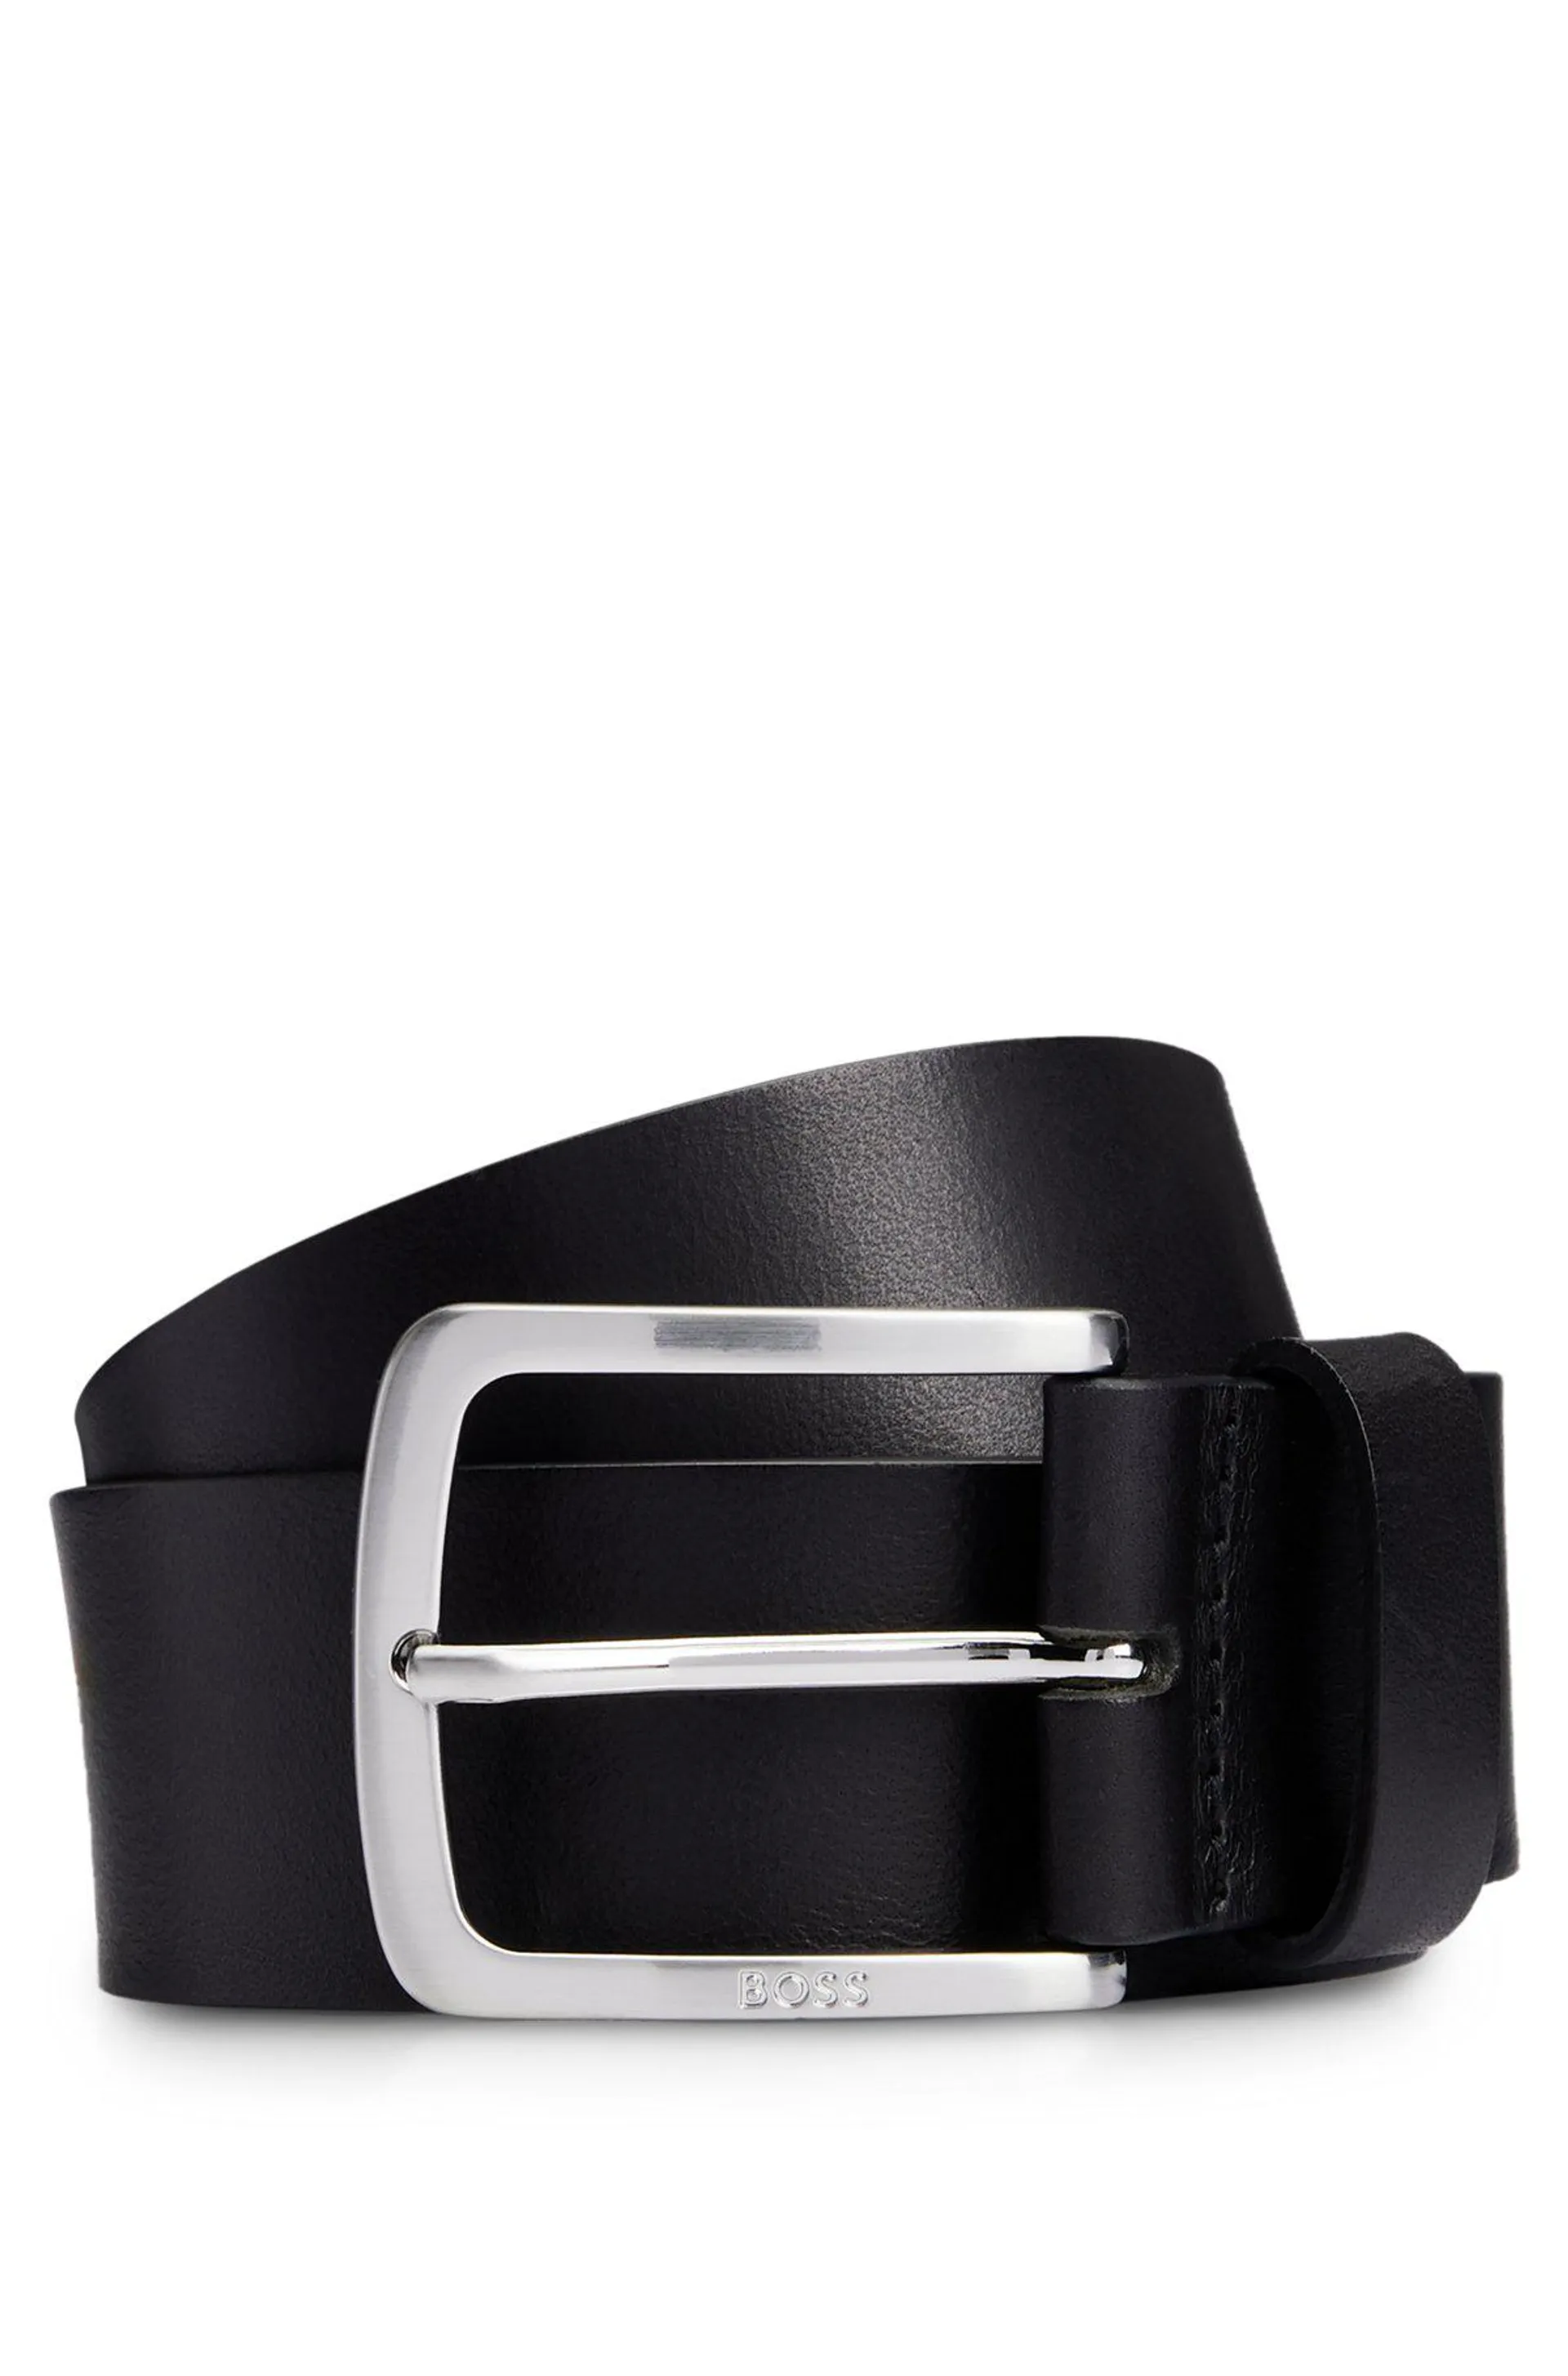 Cinturón de piel italiana con hebilla grabada con logo